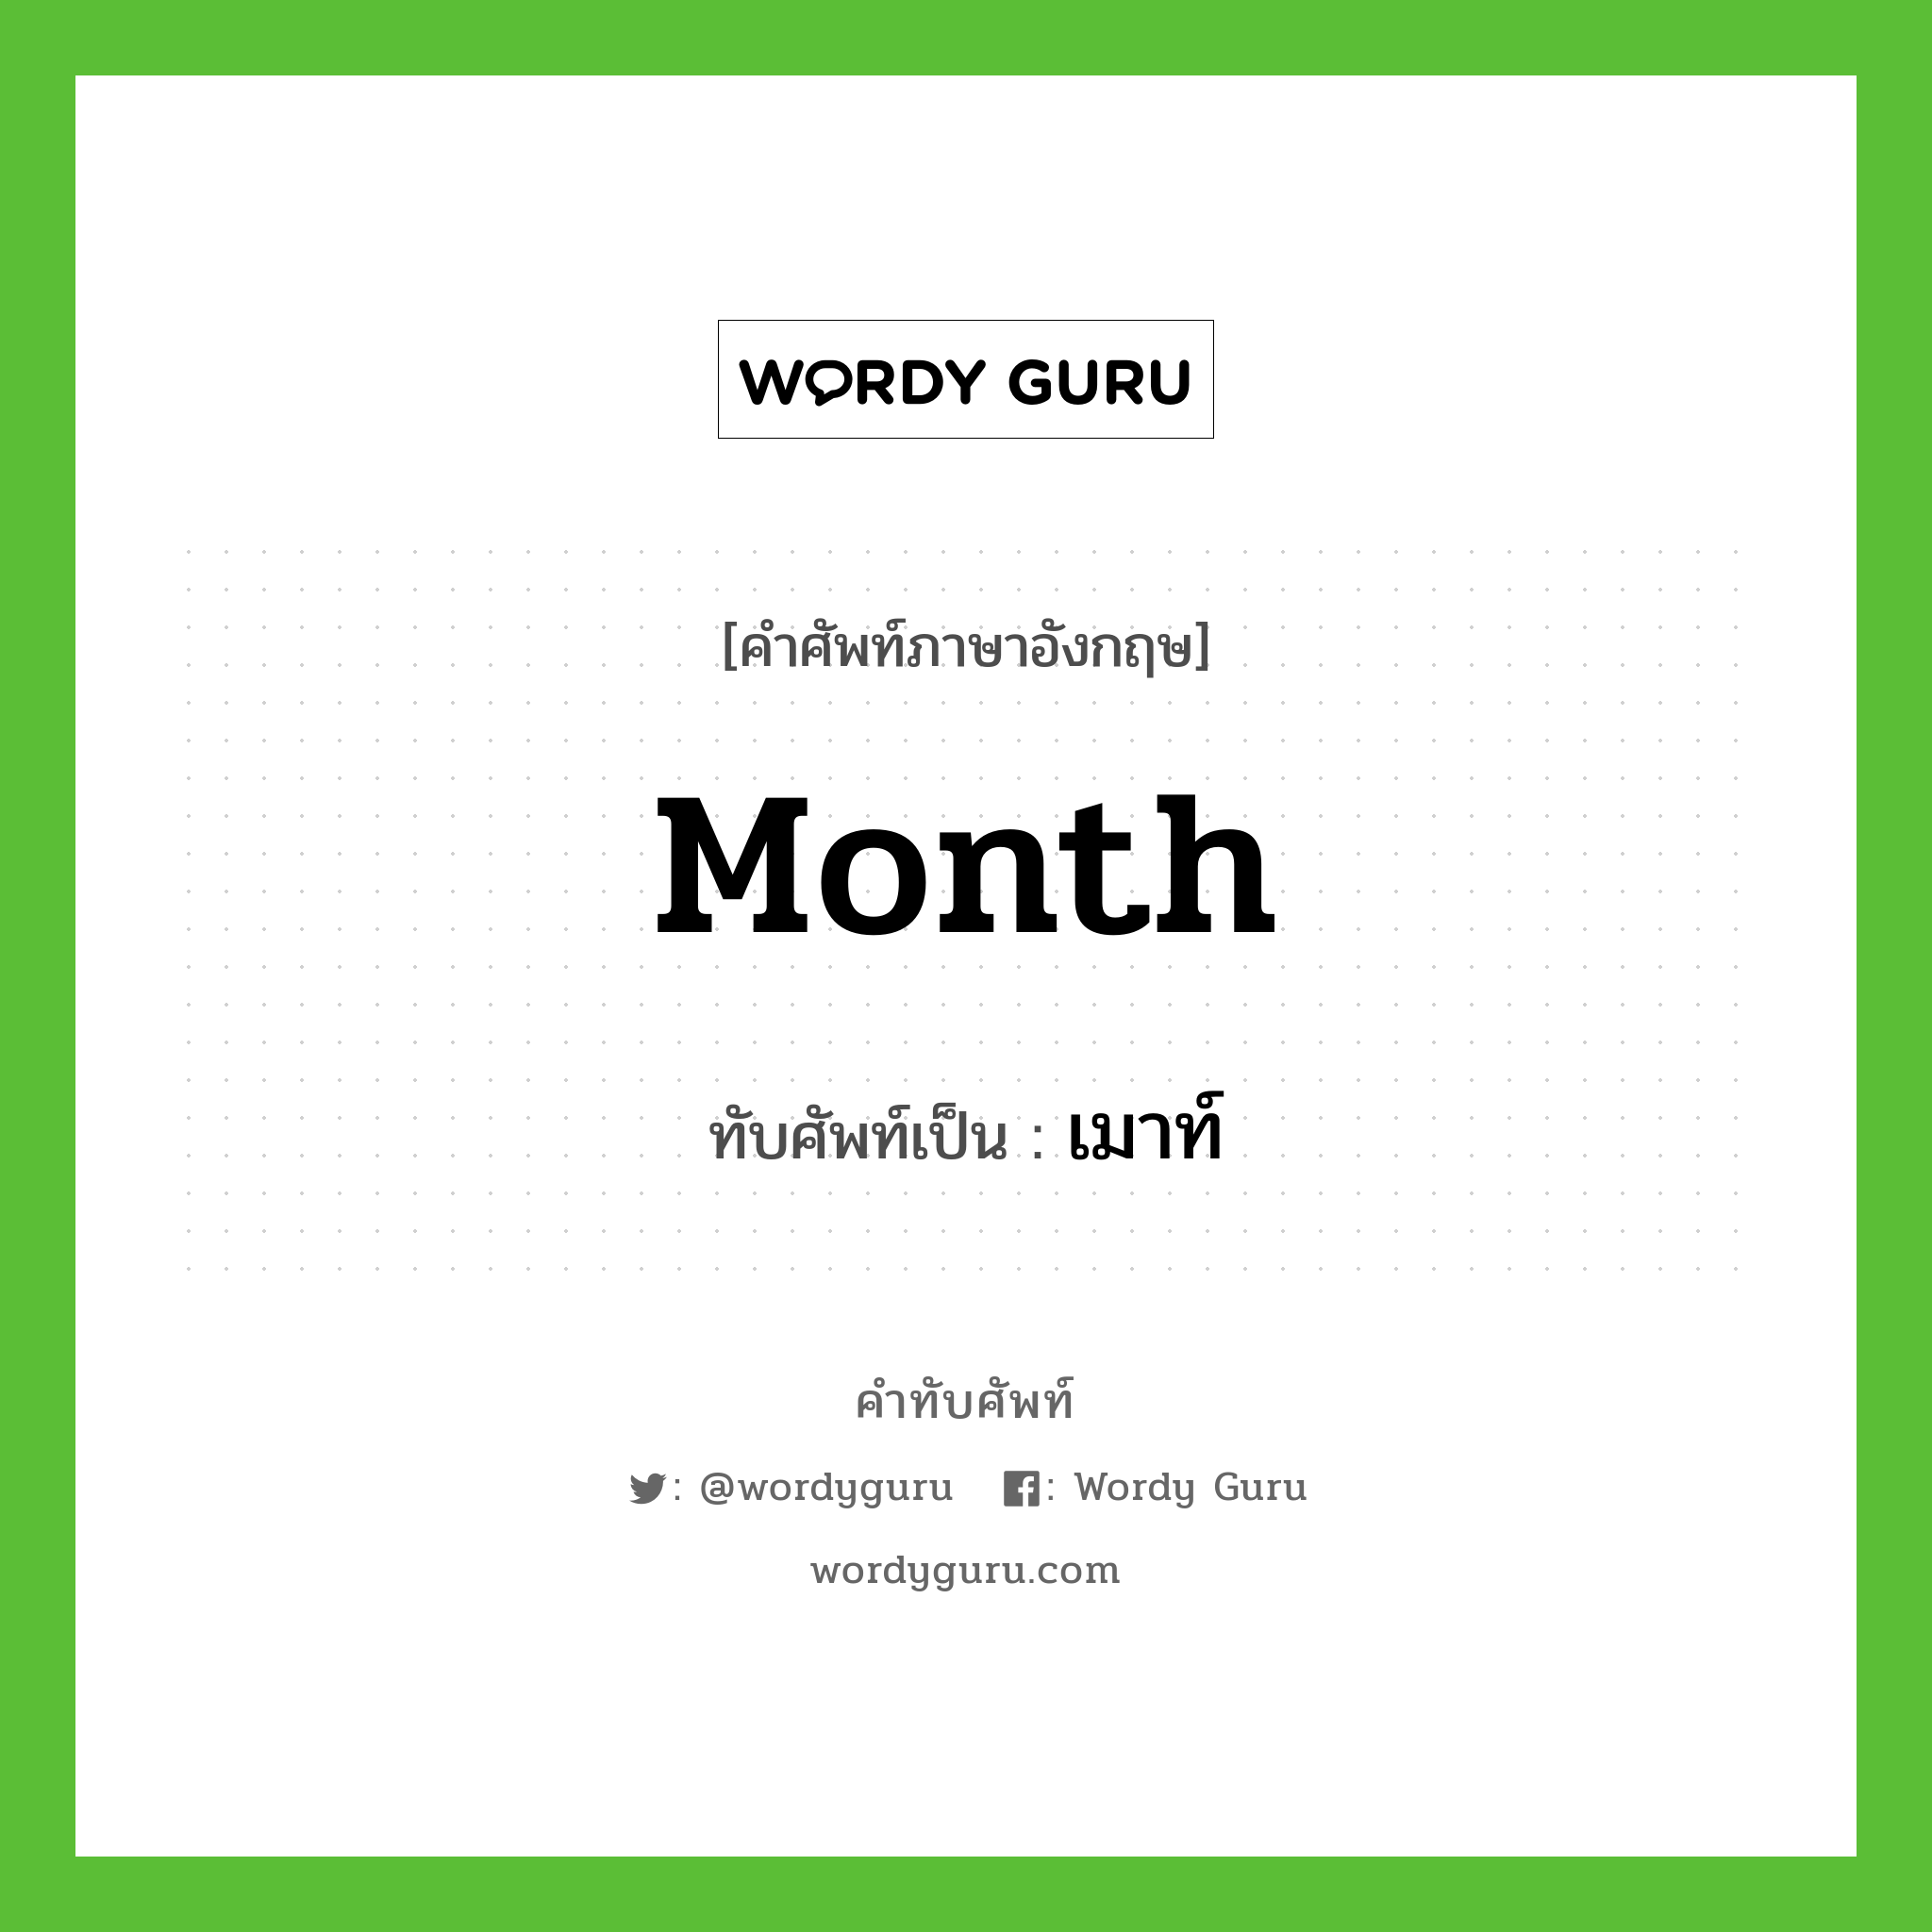 Month เขียนเป็นคำไทยว่าอะไร?, คำศัพท์ภาษาอังกฤษ Month ทับศัพท์เป็น เมาท์